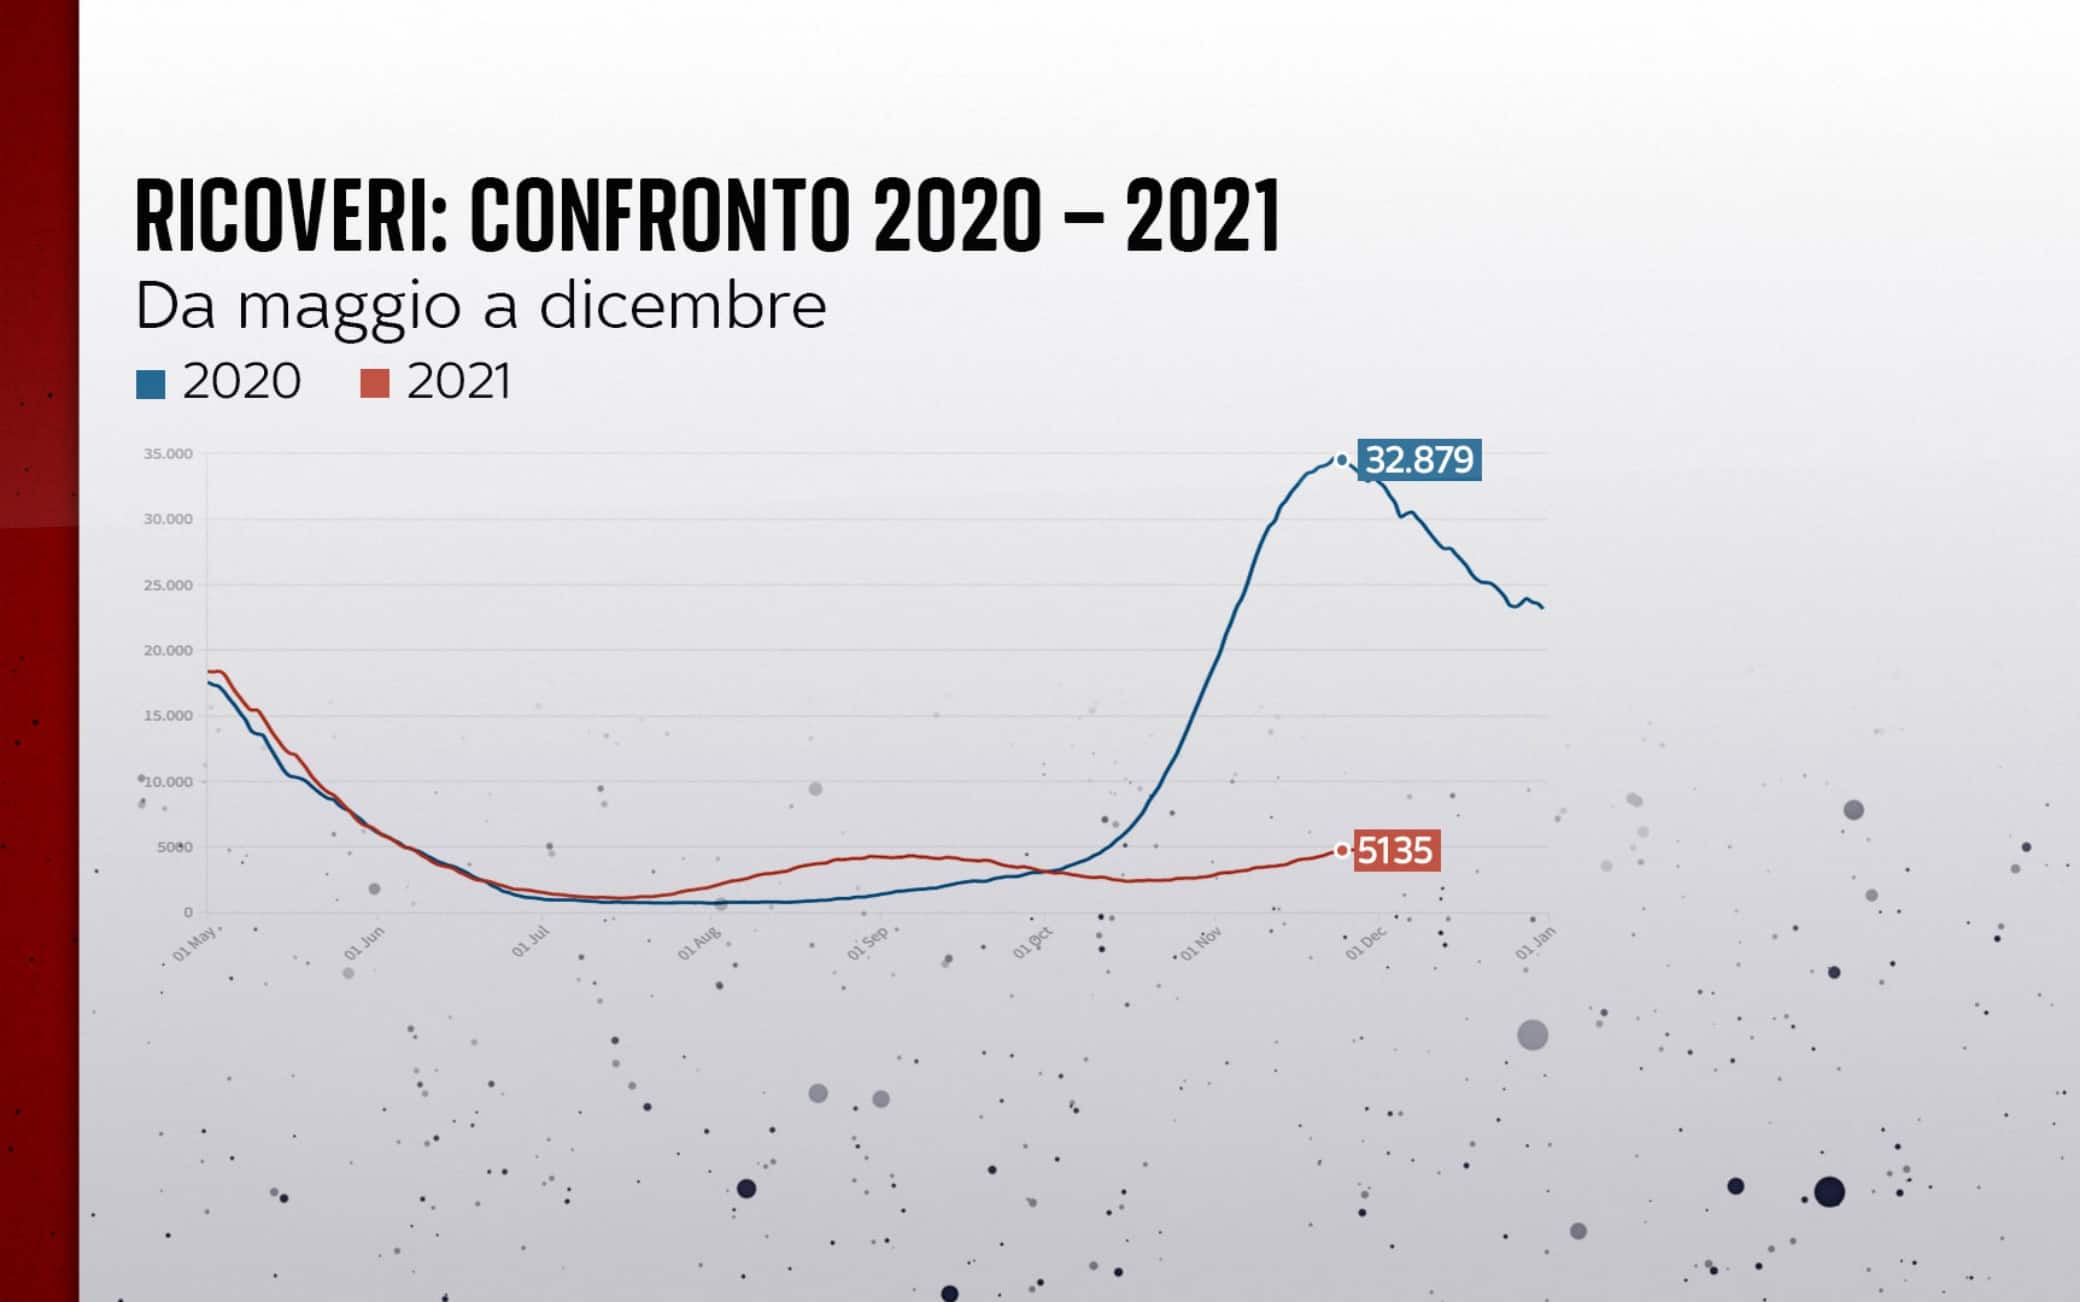 Ricoveri confronto 2020 e 2021